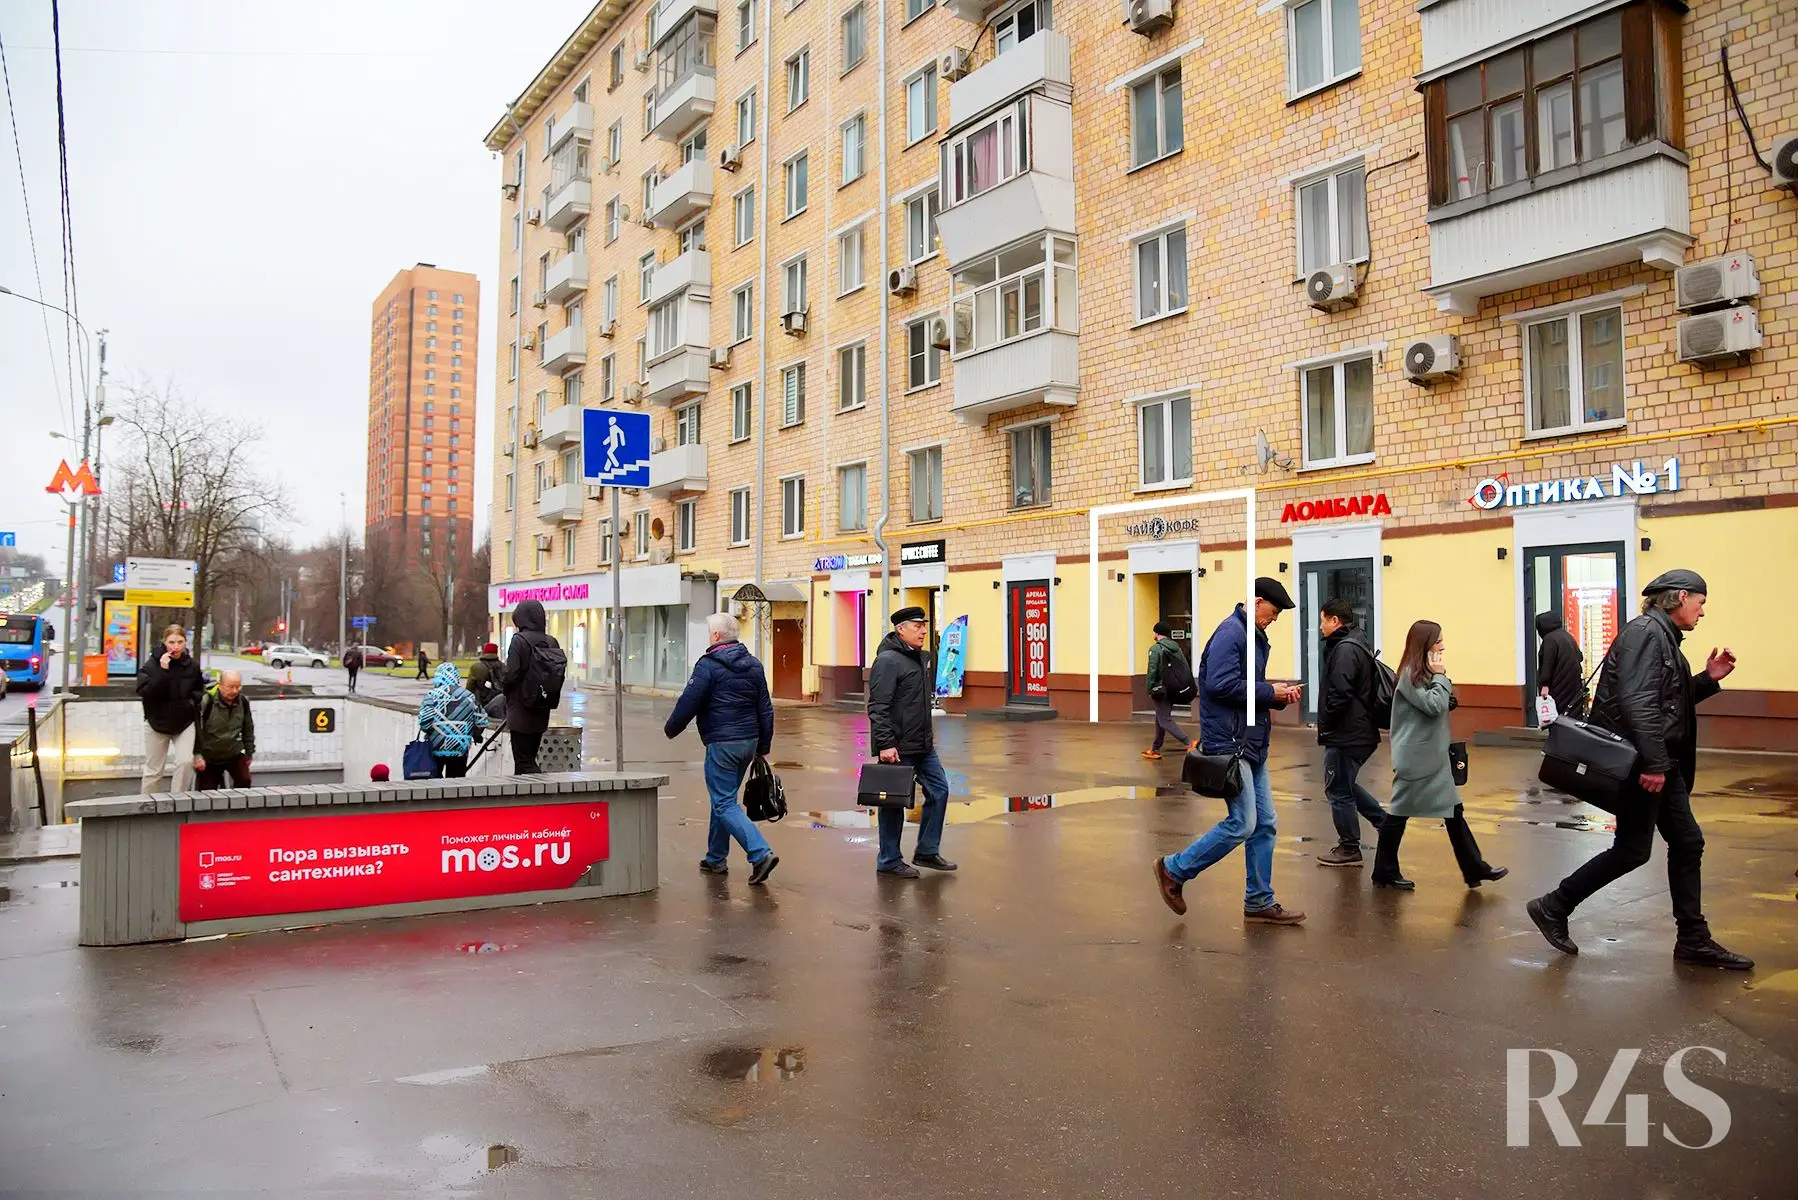 Продажа готового арендного бизнеса площадью 21 м2 в Москве: Профсоюзная, 26/44 R4S | Realty4Sale